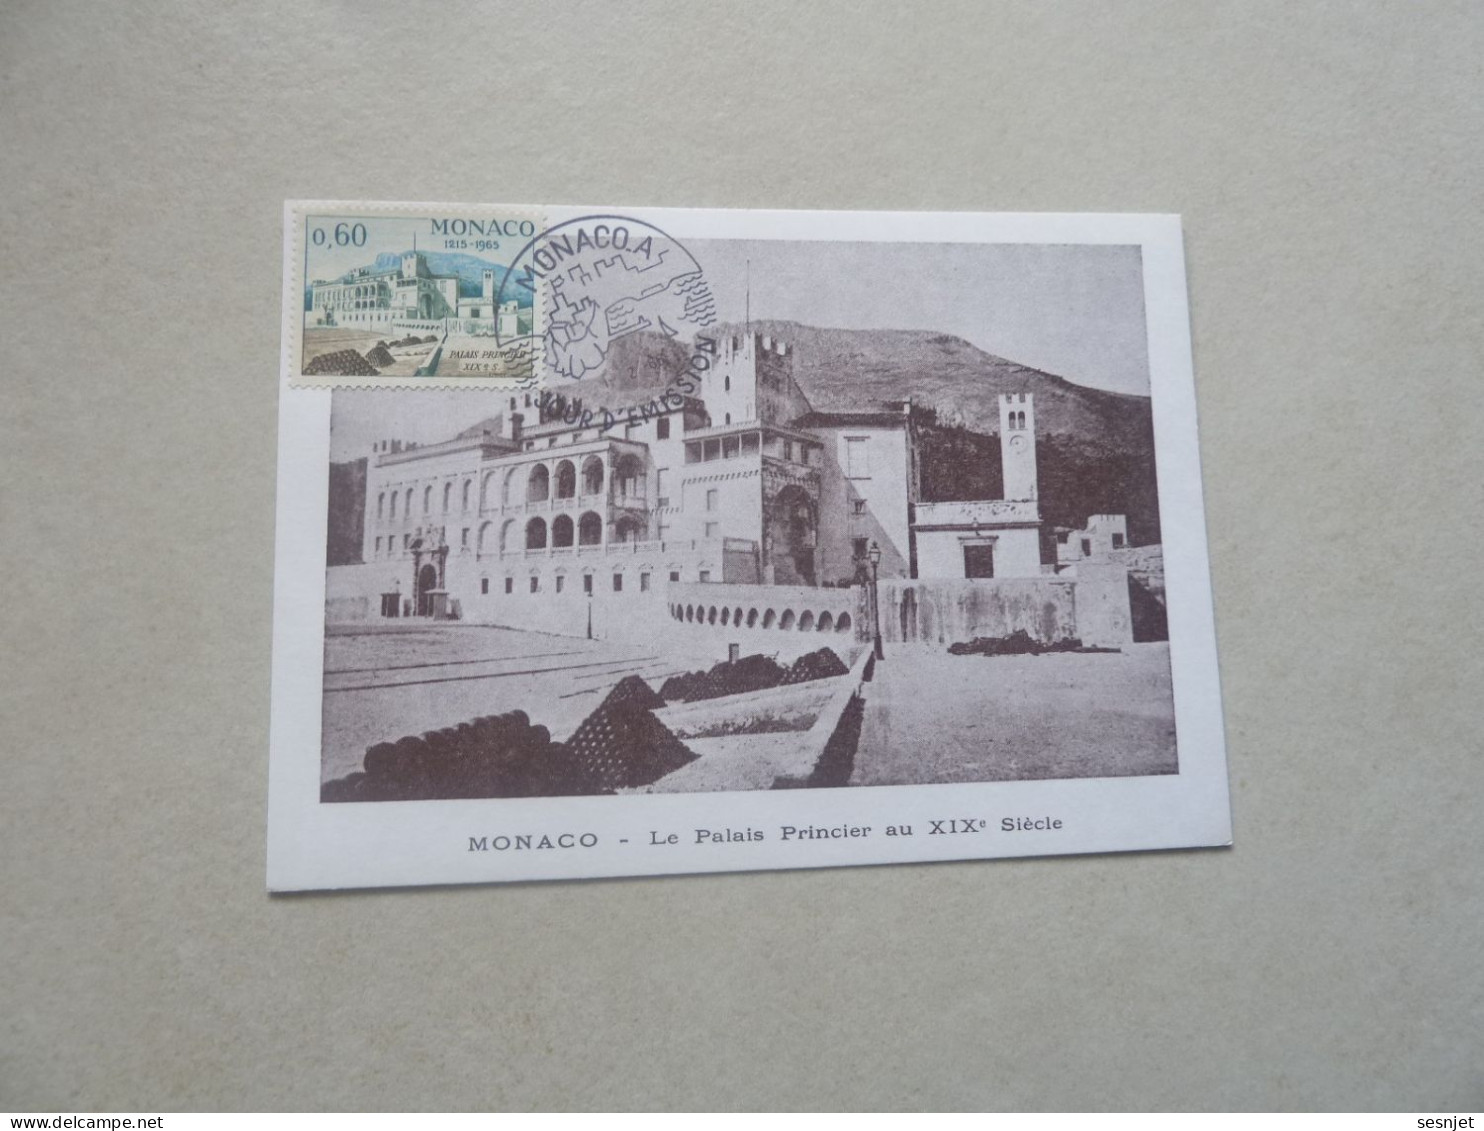 Monaco - Le Palais Au 19ème Siècle - 60c. - Yt 681 - Carte Premier Jour D'Emission - Année 1966 - - FDC